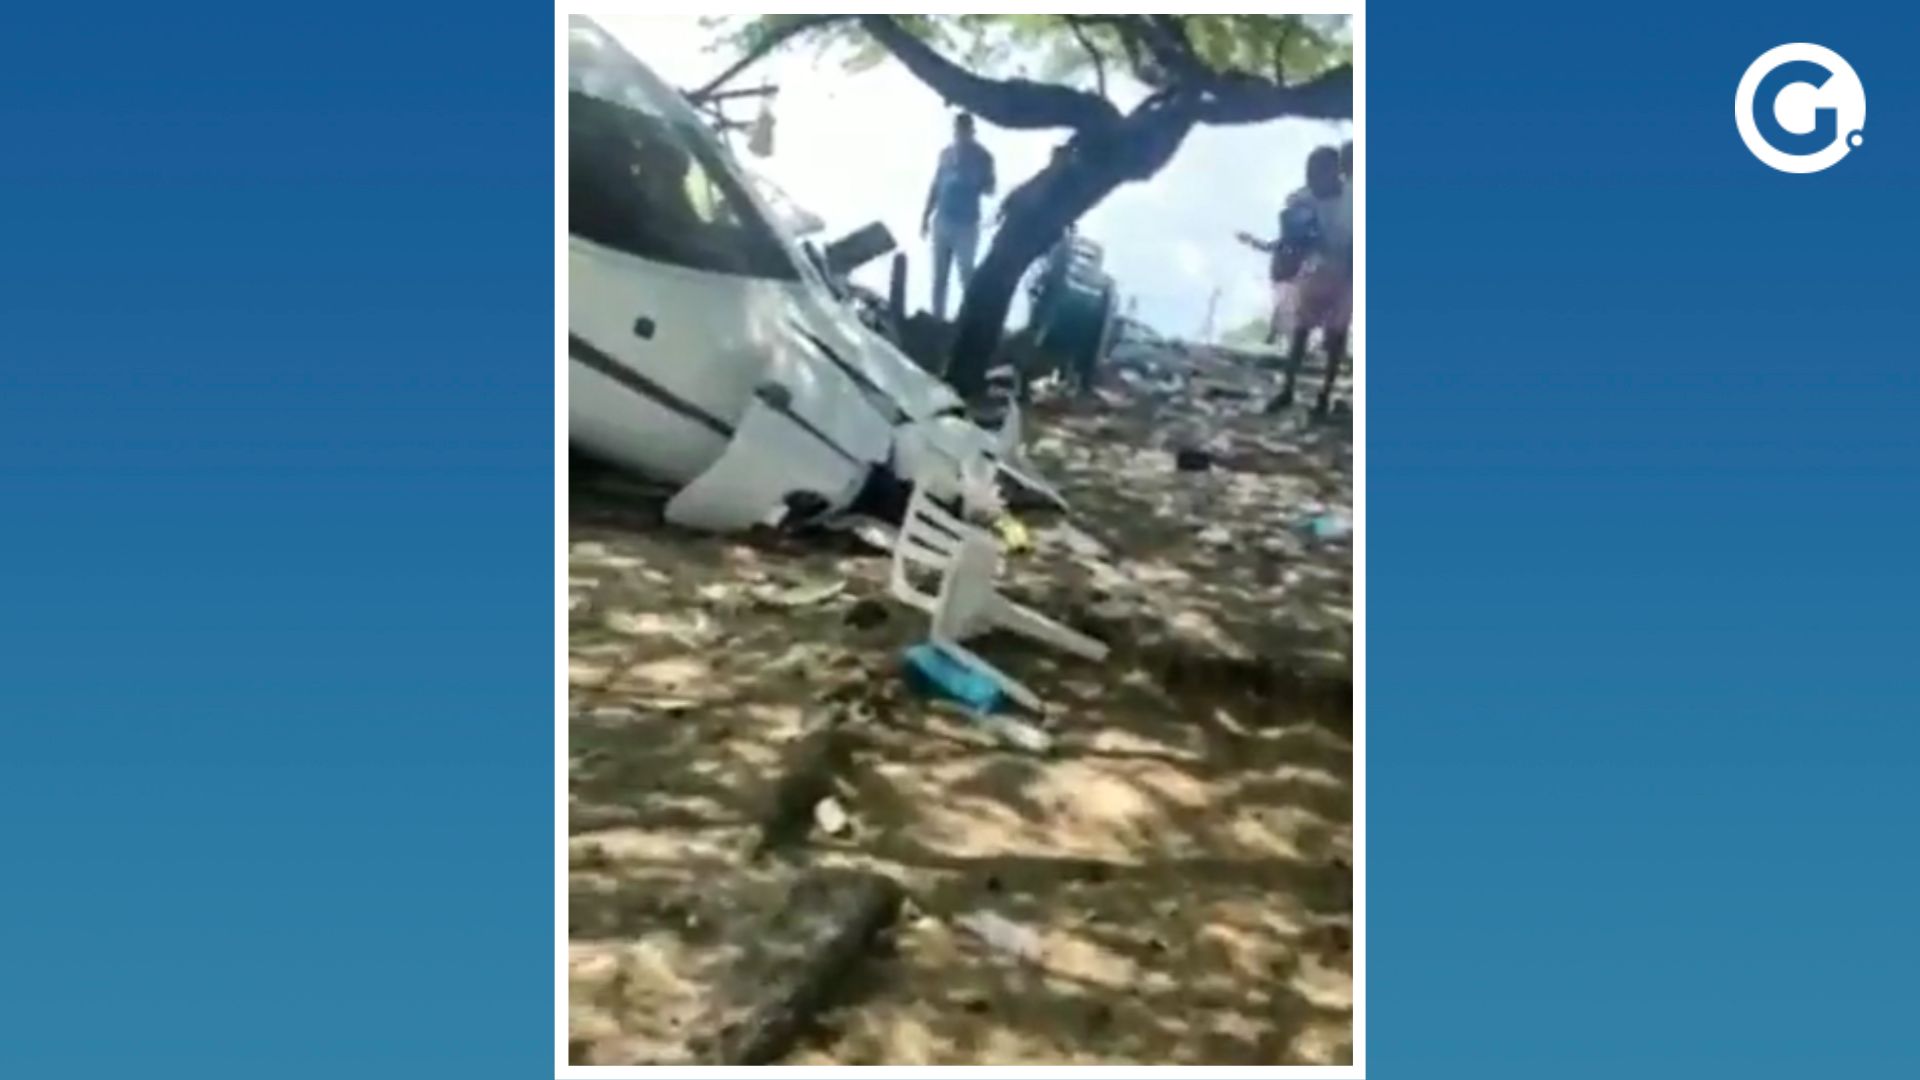 O menino caminhava por uma praia na cidade de Santa Marta, local onde o acidente aconteceu, quando a aeronave saiu da pista no momento em que tentava decolar